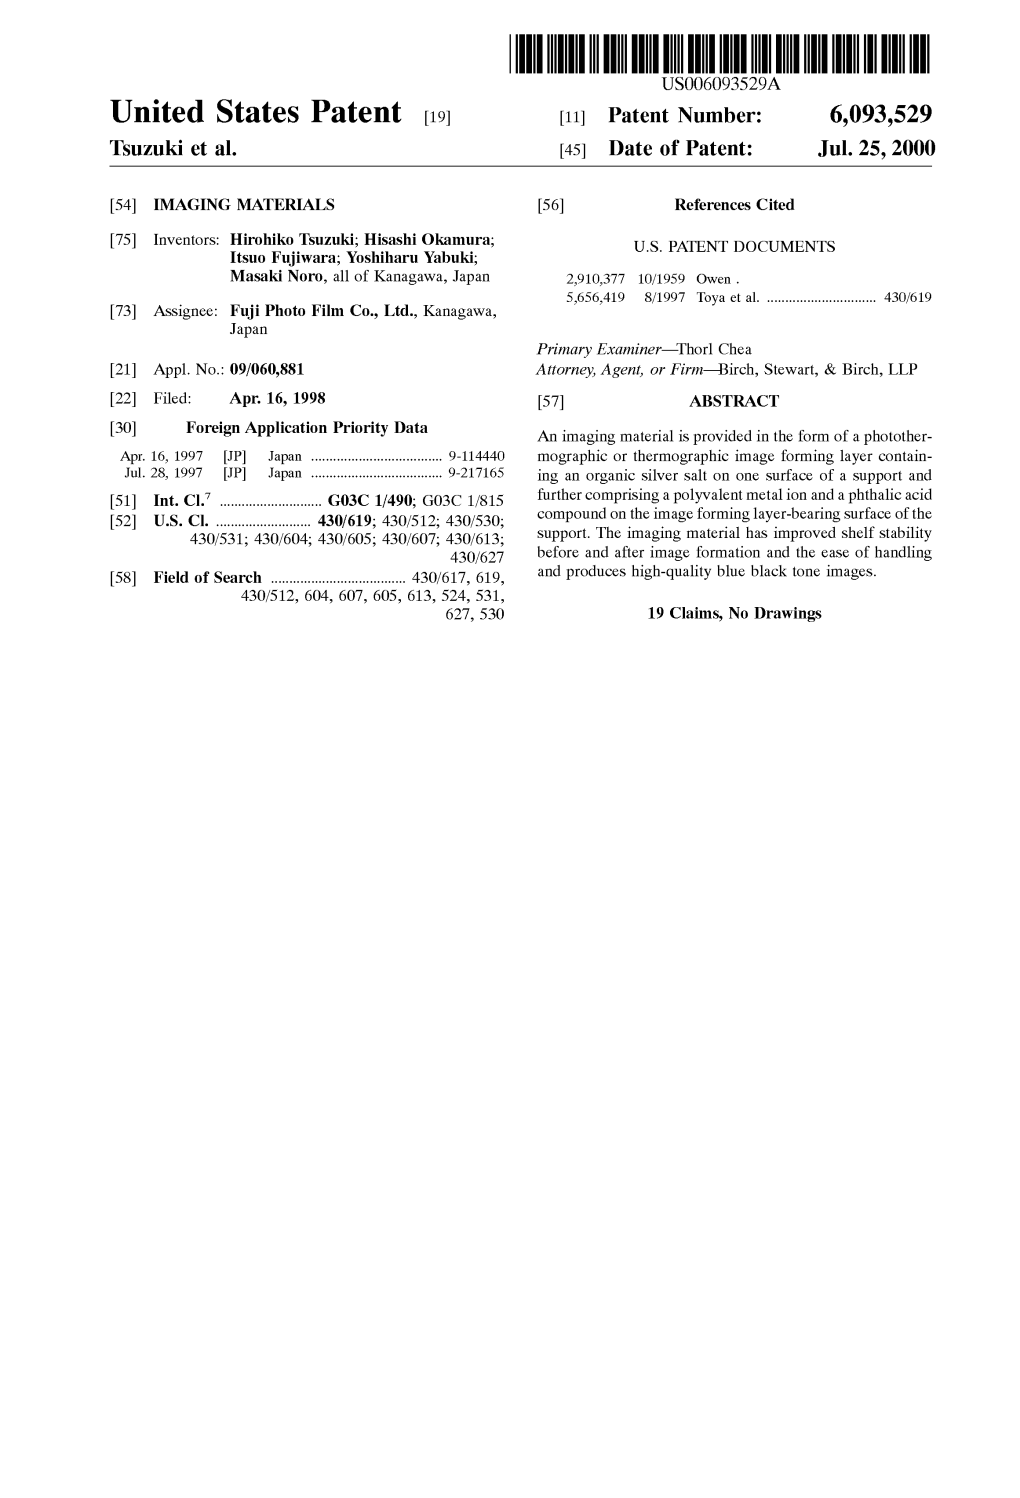 United States Patent (19) 11 Patent Number: 6,093,529 Tsuzuki Et Al